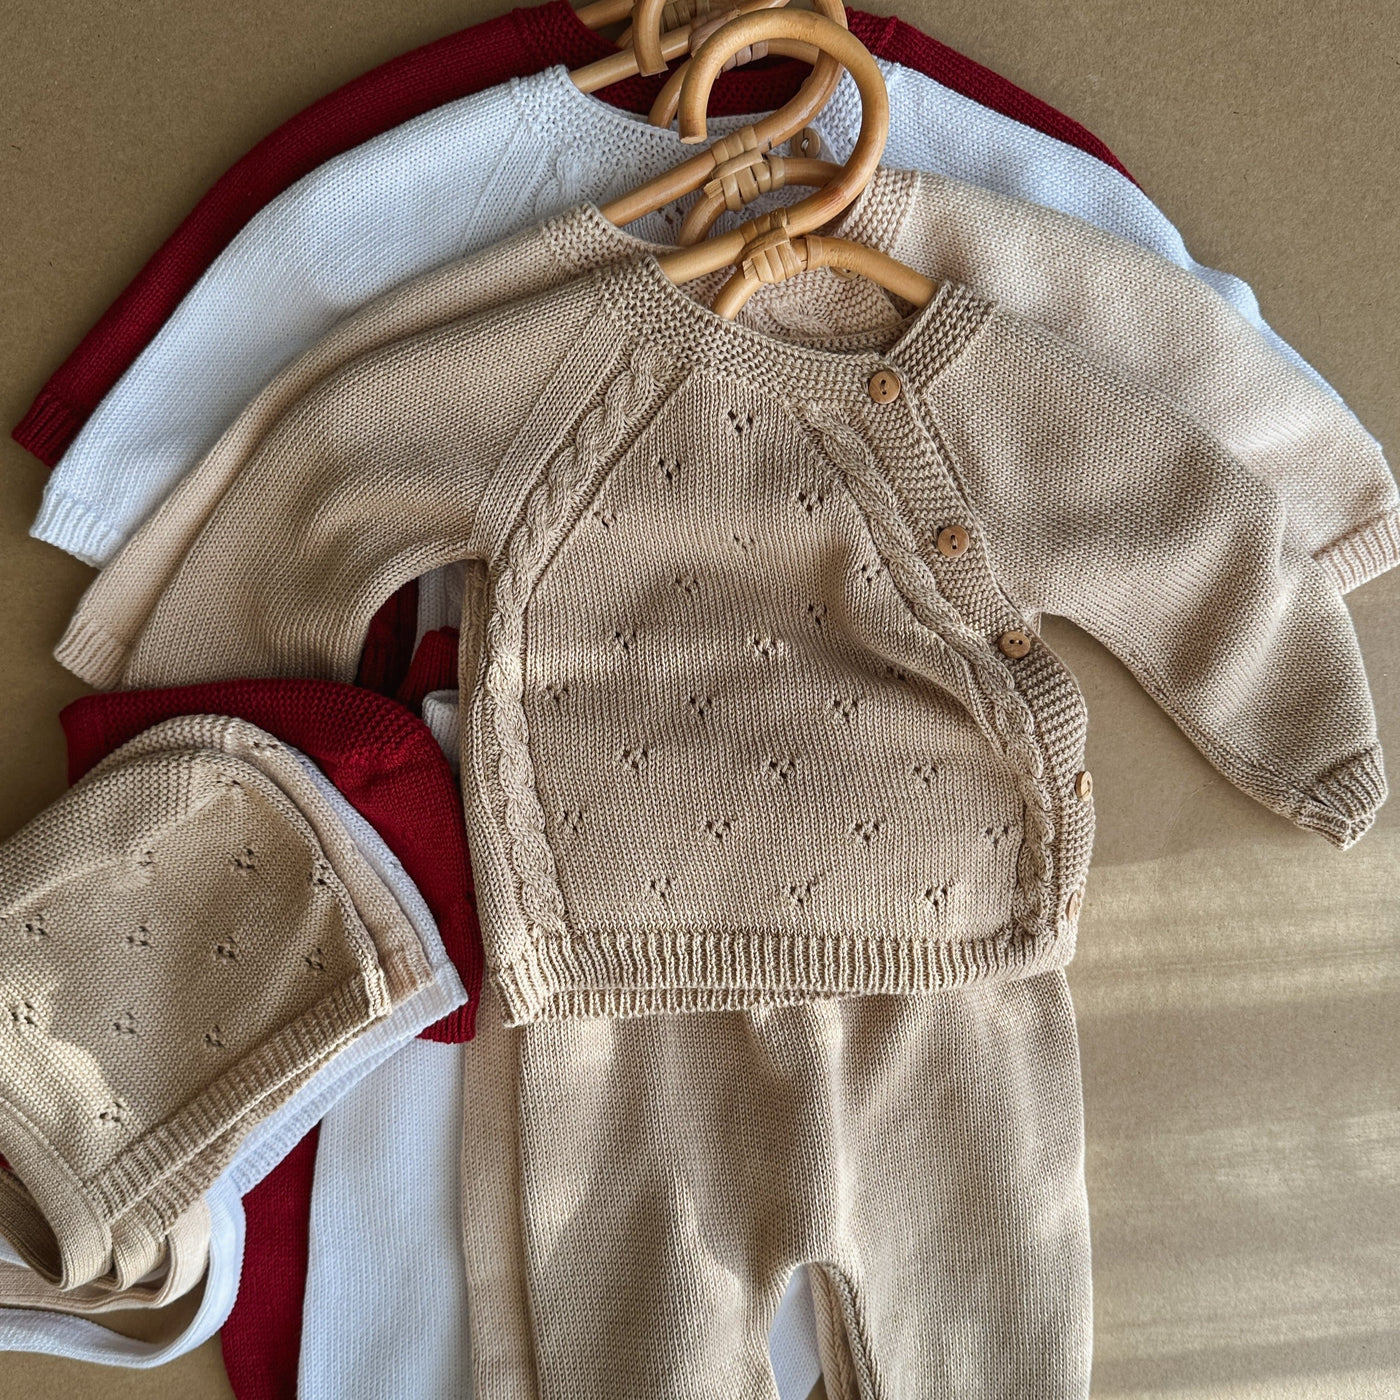 Completino lavorazione a maglia pointelle in Cotone 3 pezzi - Baby Clothes - Baby Rainbow Shop - P.IVA 04847500230